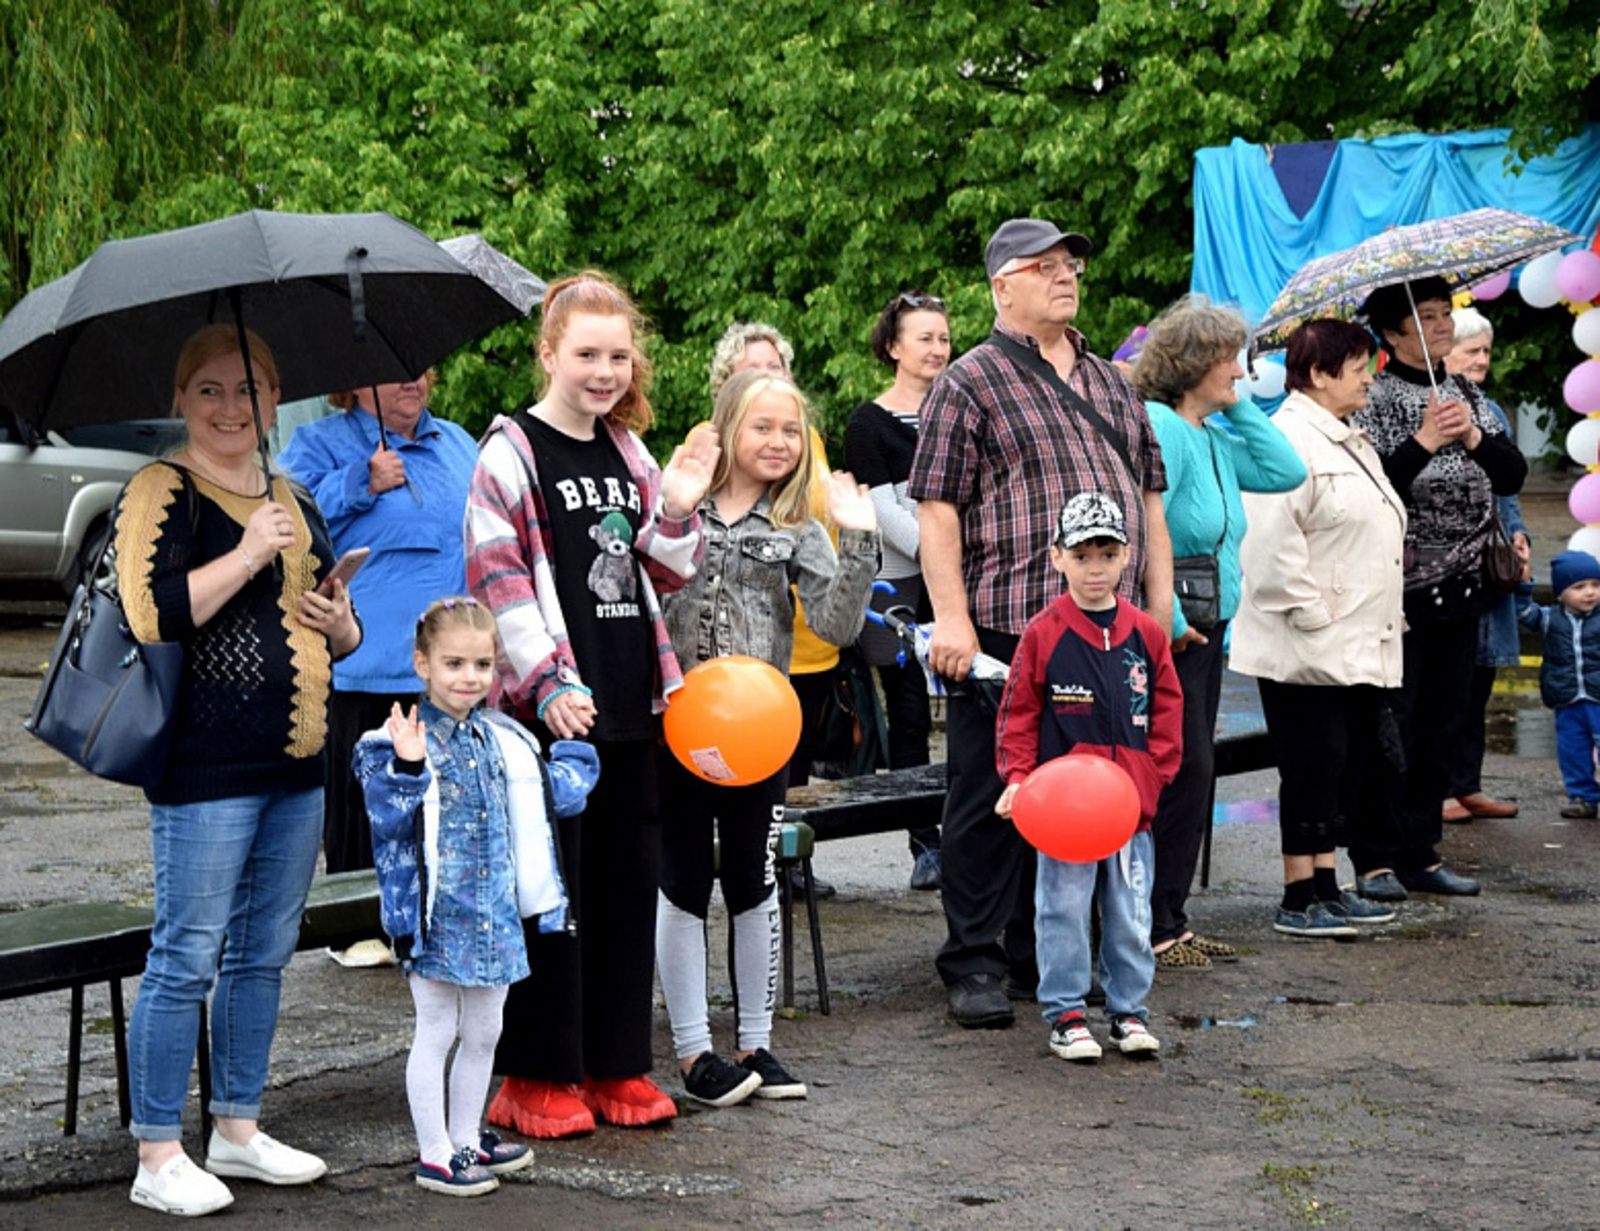 В Луганске открылась детская площадка, подаренная Башкирией